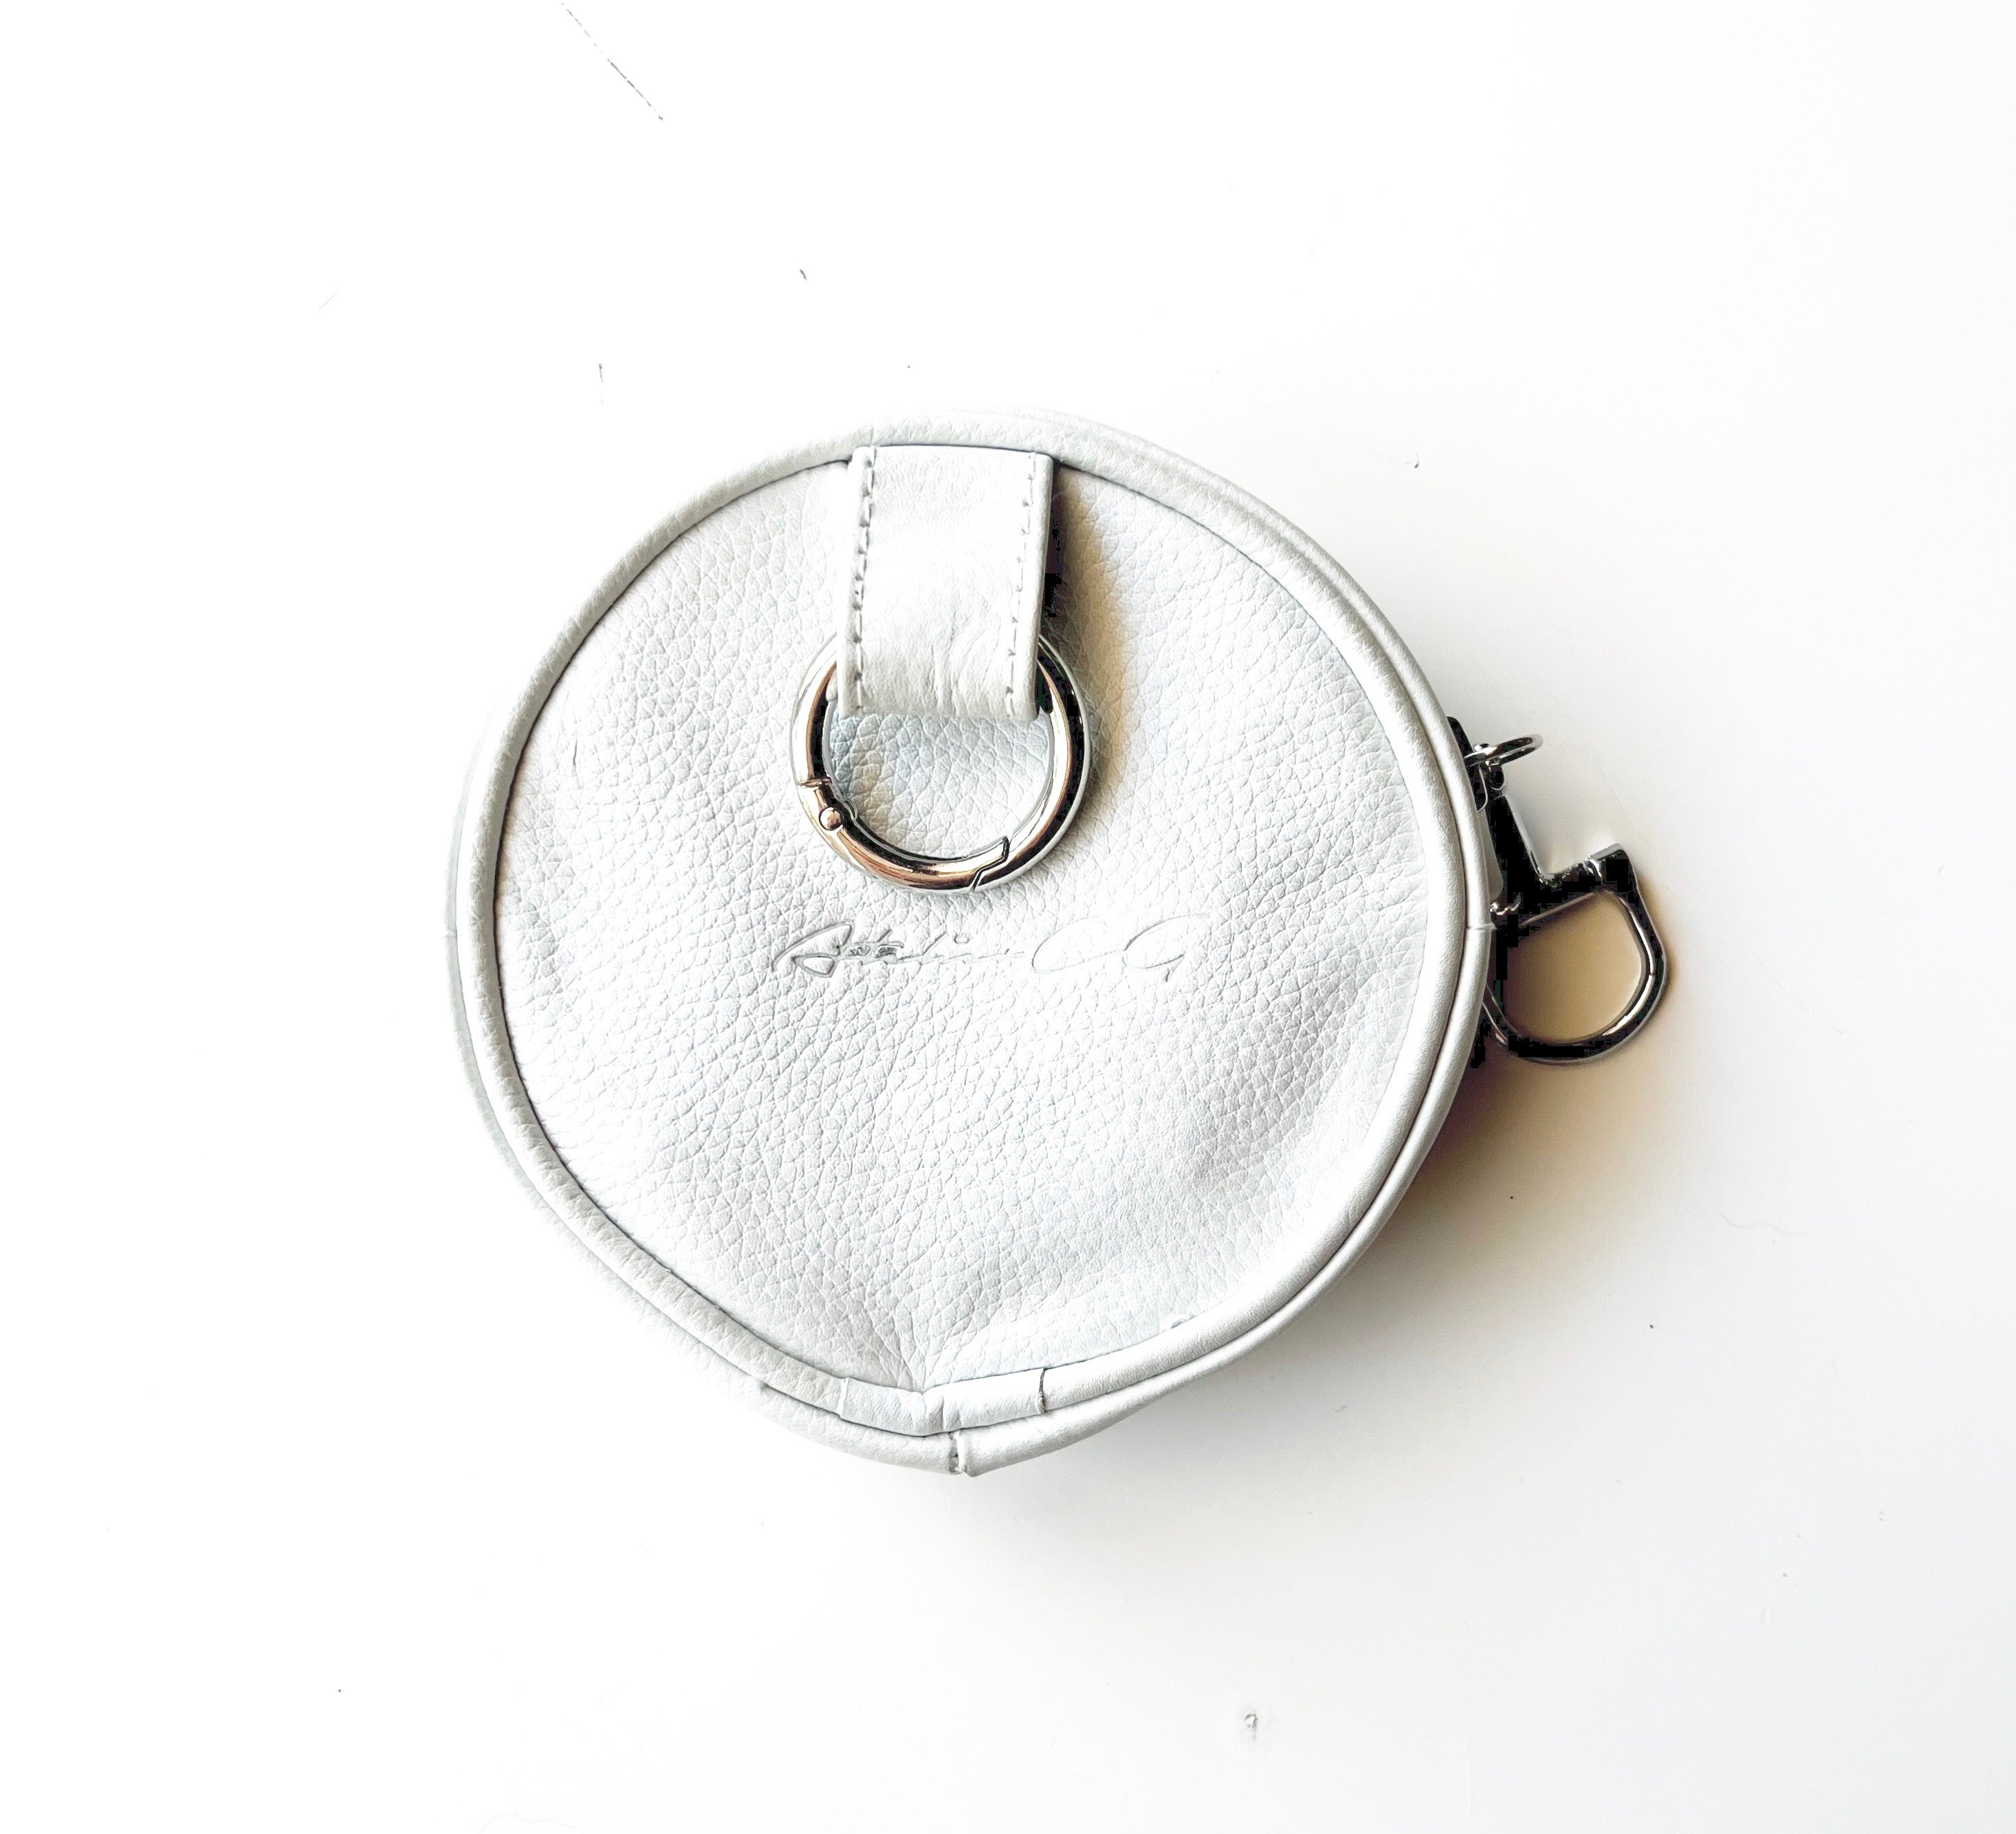 BLAISE ZIP POUCH - white - Treat Pouch - Coin pouch - shoulder bag - Belt Bag - belt pouch - AtelierCG™